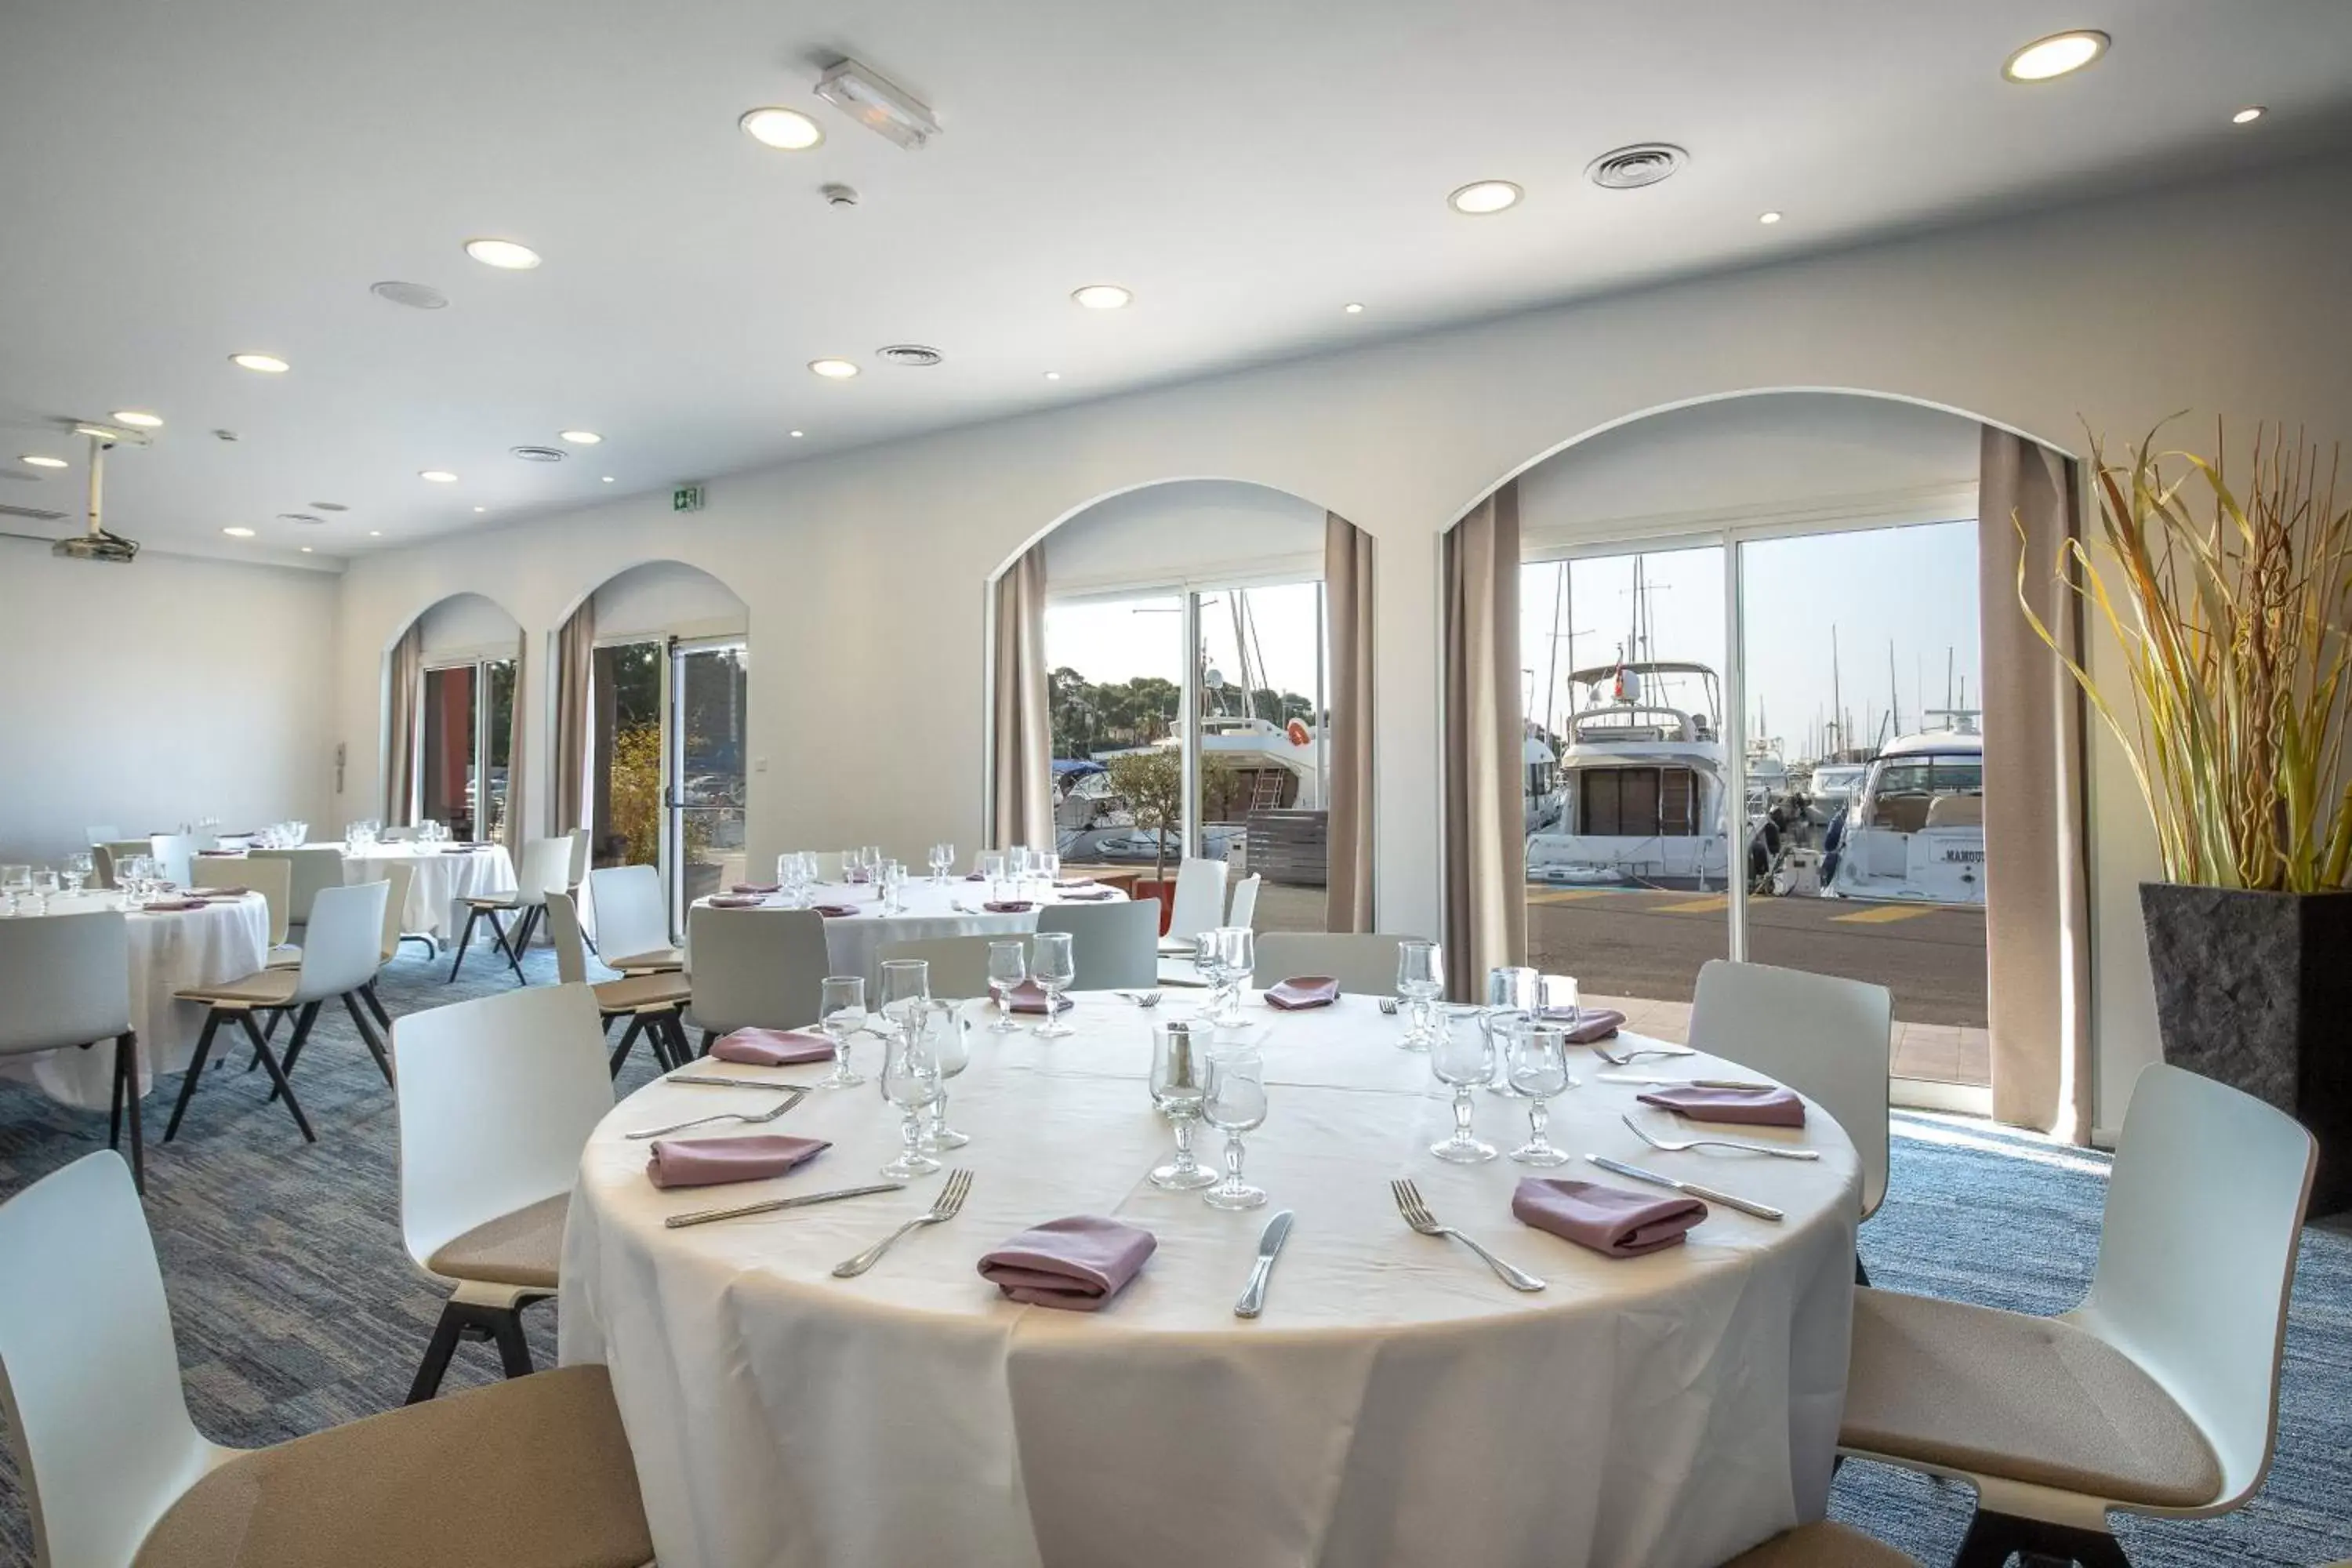 Banquet/Function facilities, Banquet Facilities in Best Western Plus La Marina